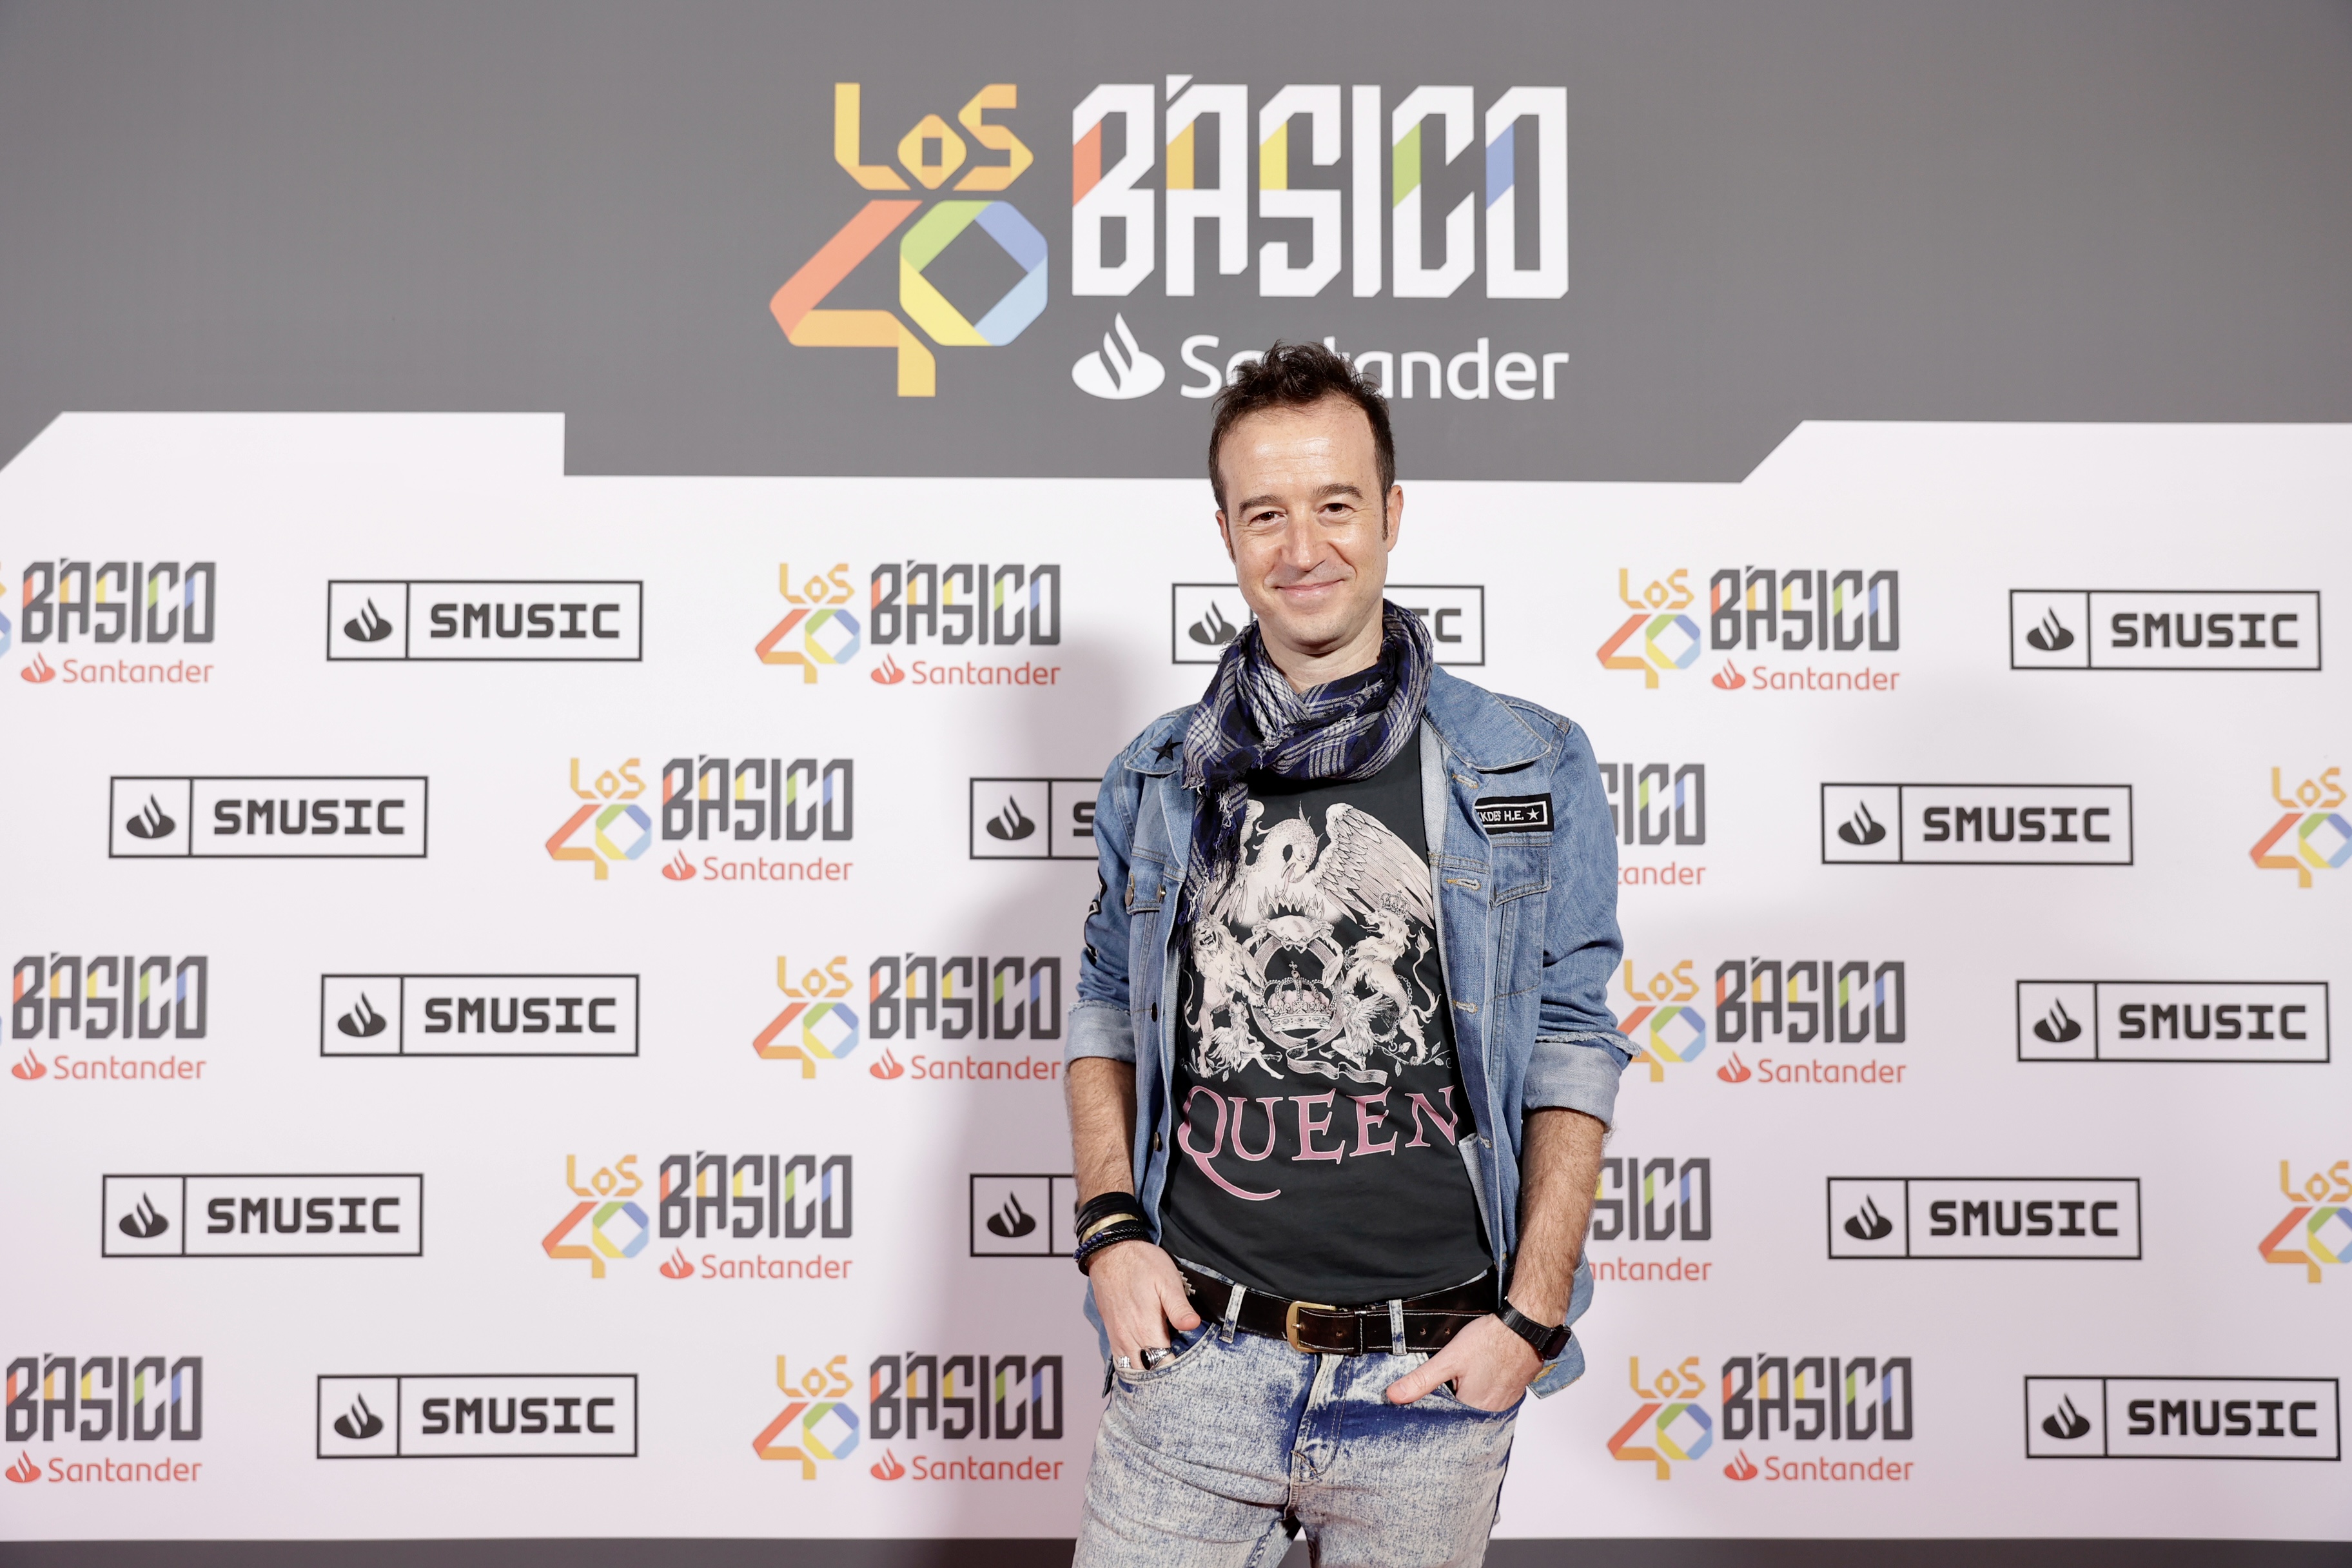 El presentador de LOS40 Jesús Taltavull posó con una camiseta de Queen en el photocall previo al Básico.